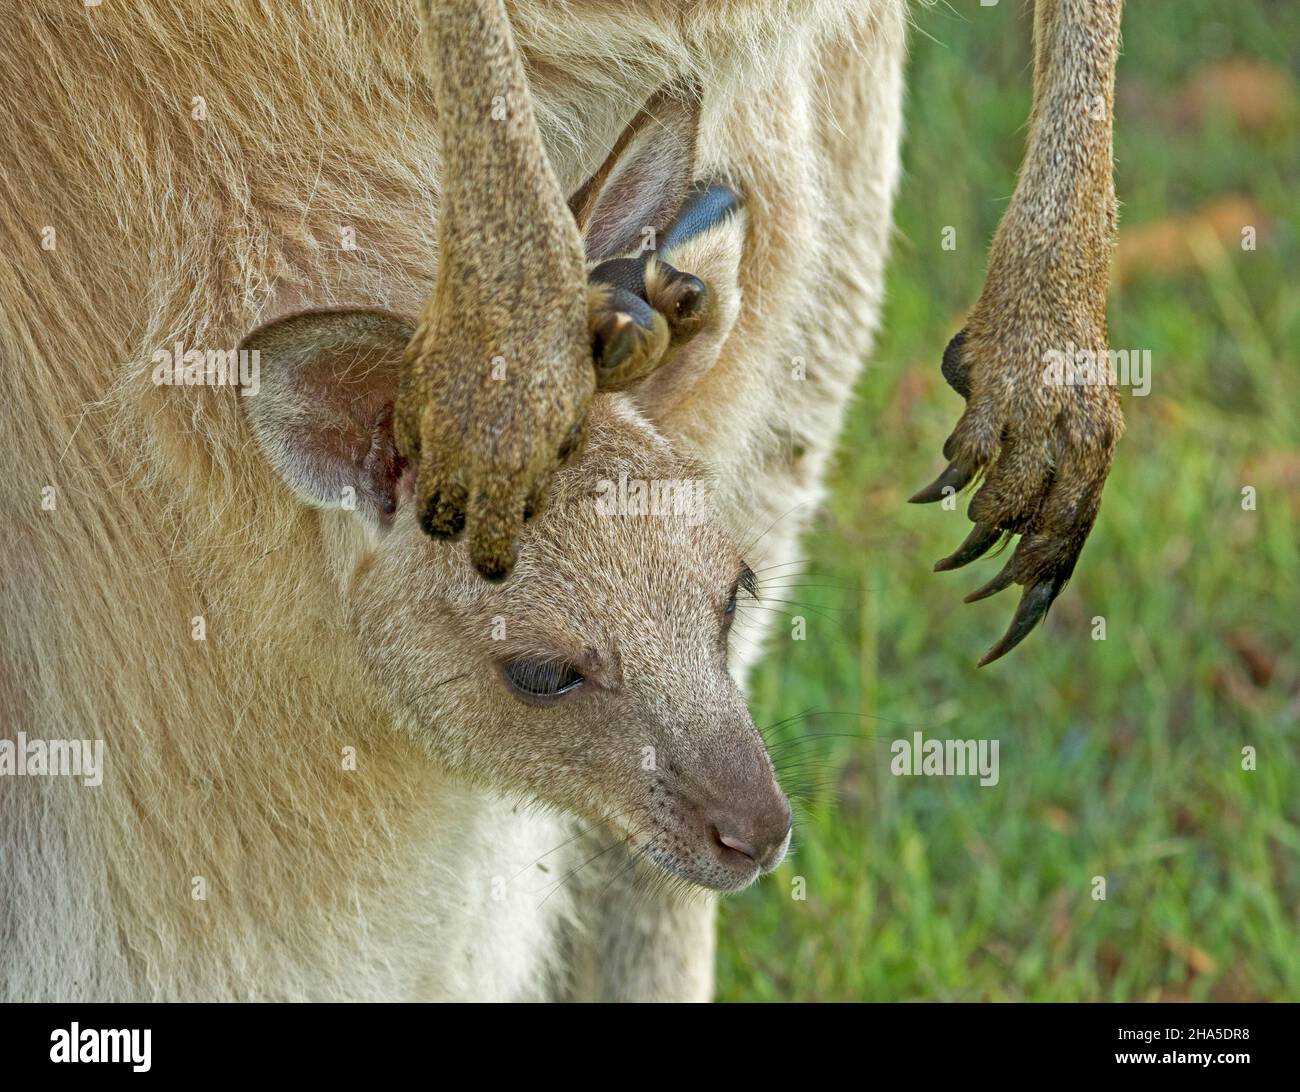 Cara del pequeño joey de canguro gris oriental que se sale de la bolsa con patas grandes y garras largas de la madre colgando a su lado, en la naturaleza en Australia Foto de stock